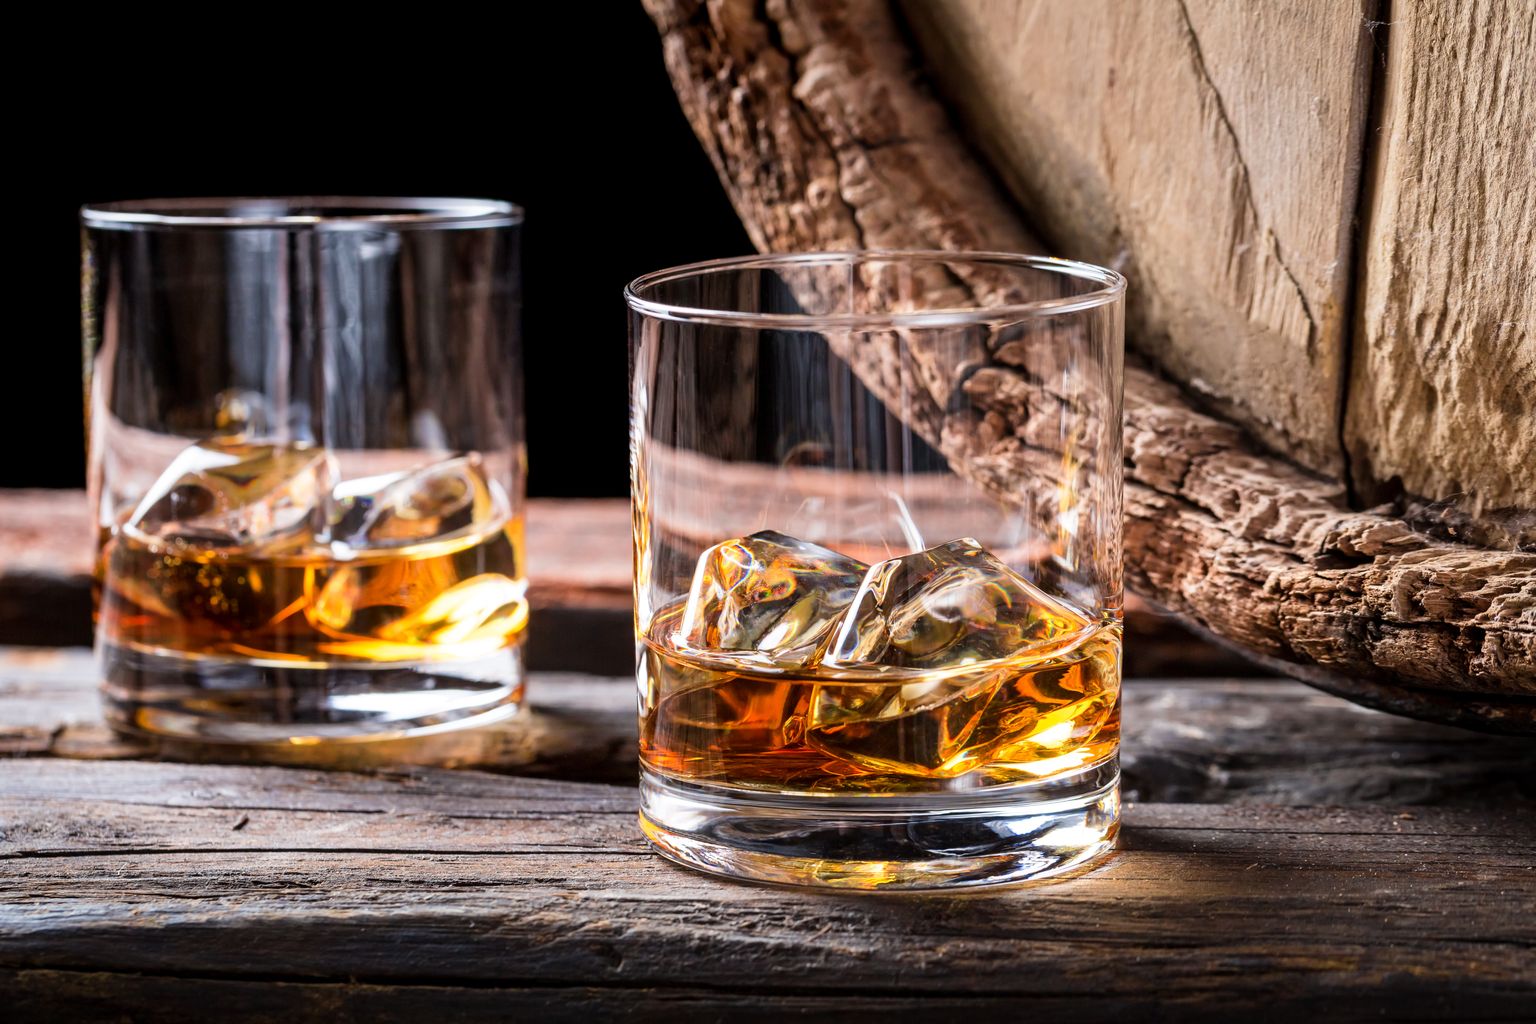 Viskivaat ja jääga viski kahes klaasis. Pilt on illustreeriv